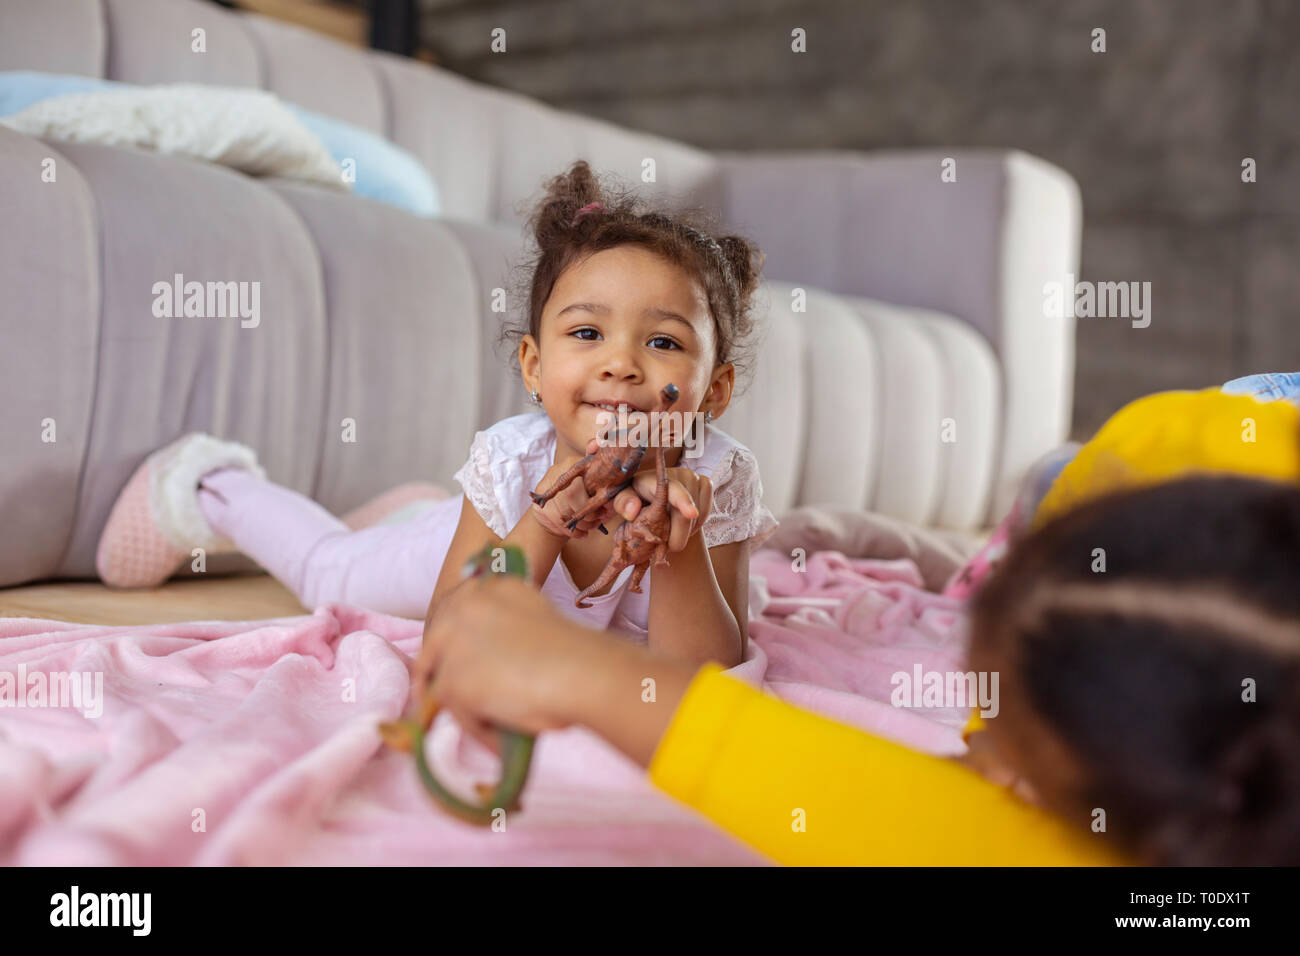 Amazing dark-skinned child looking straight at camera Stock Photo